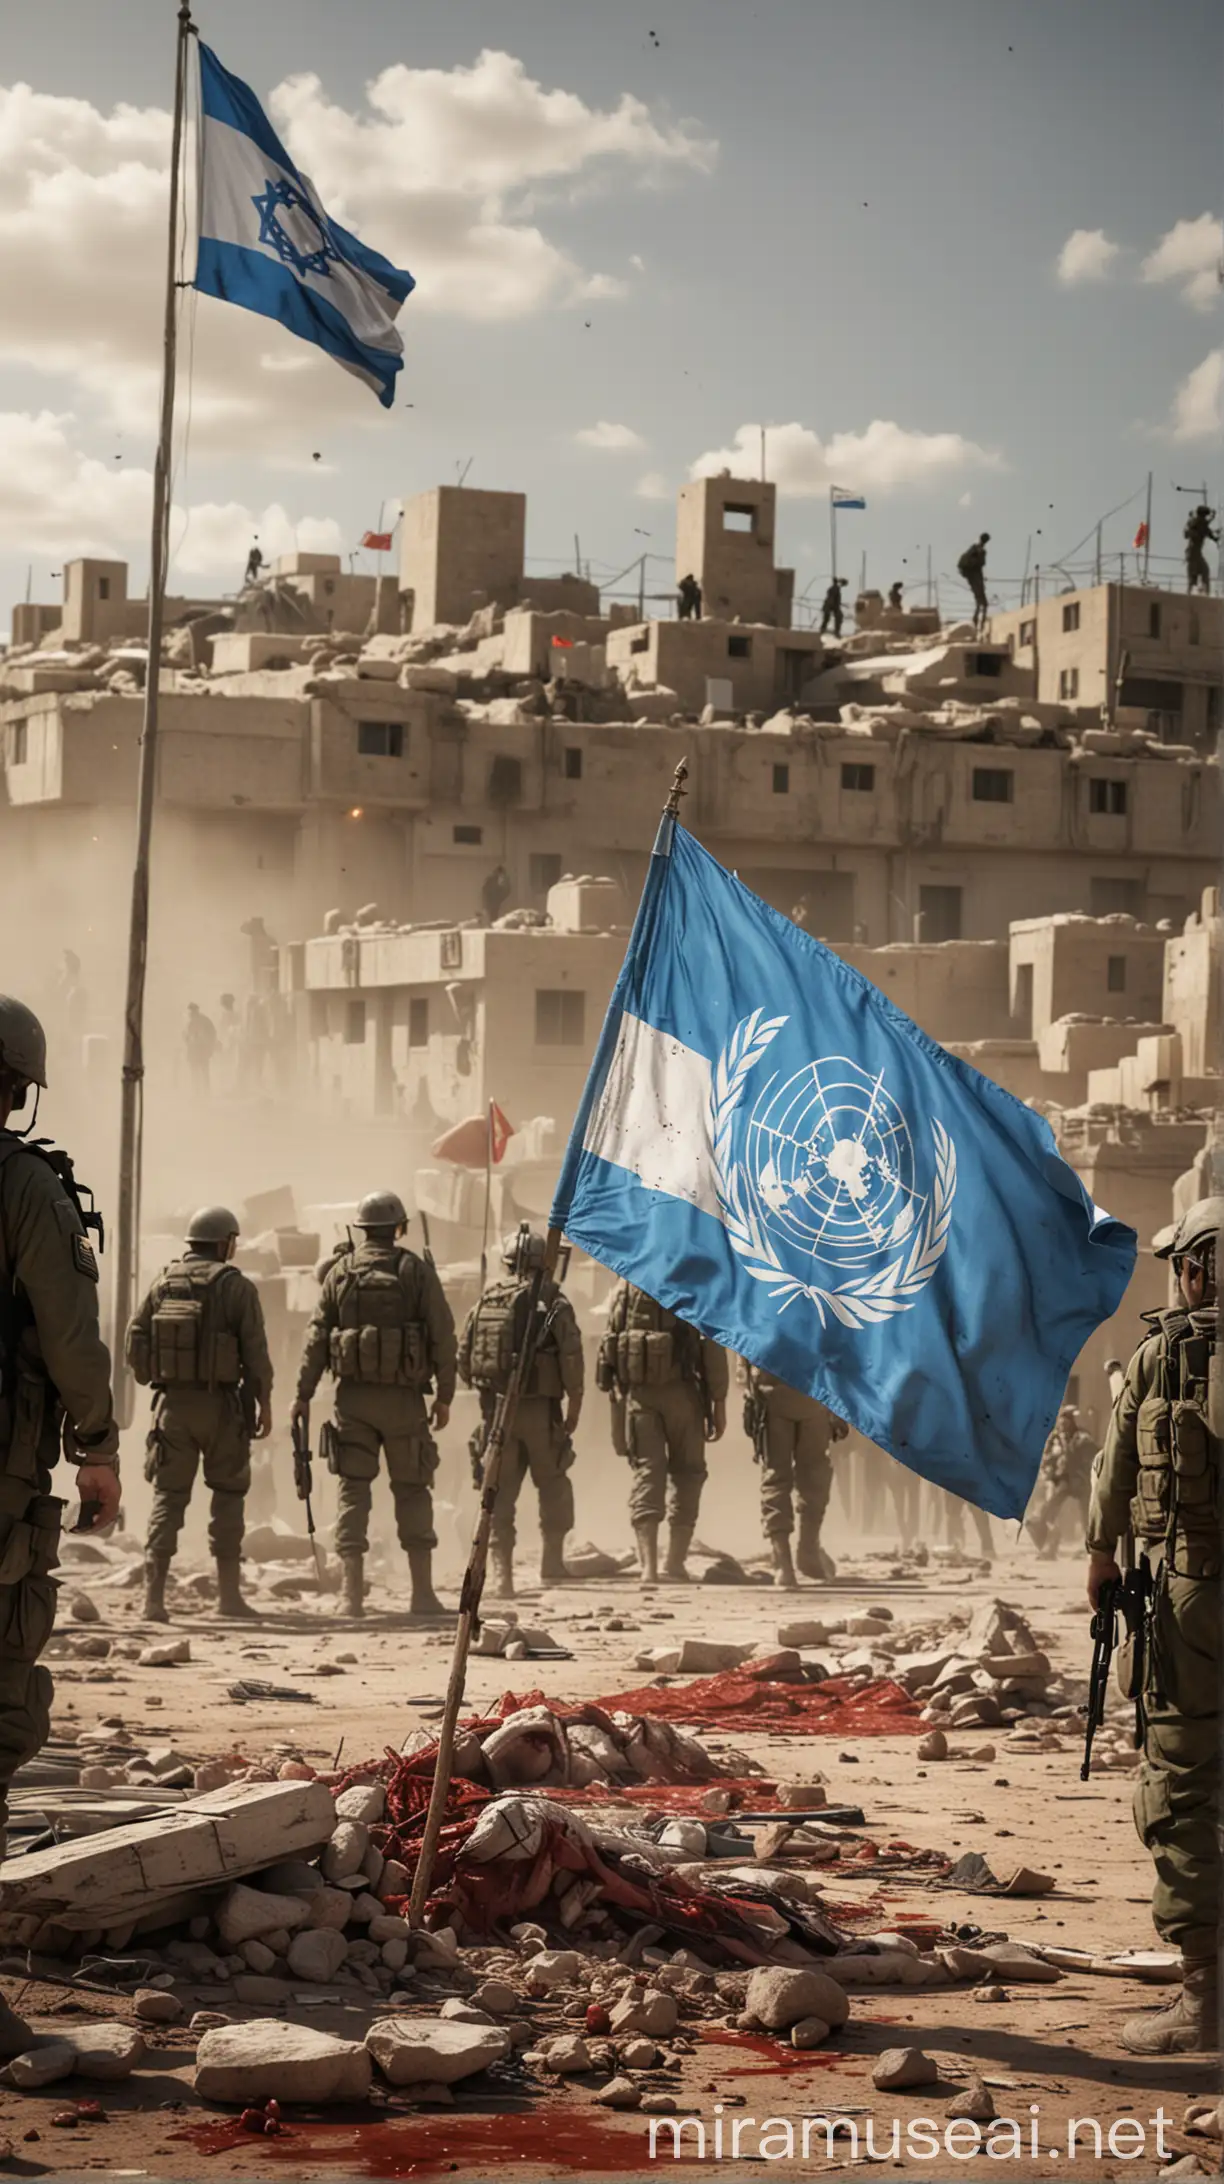 Erstelle ein fotorealistisches Bild mit der UNO-Flagge im Vordergrund. Zeige im Hintergrund eine Szene mit israelischen Soldaten, israelische Flagge und blutenden Kindern.